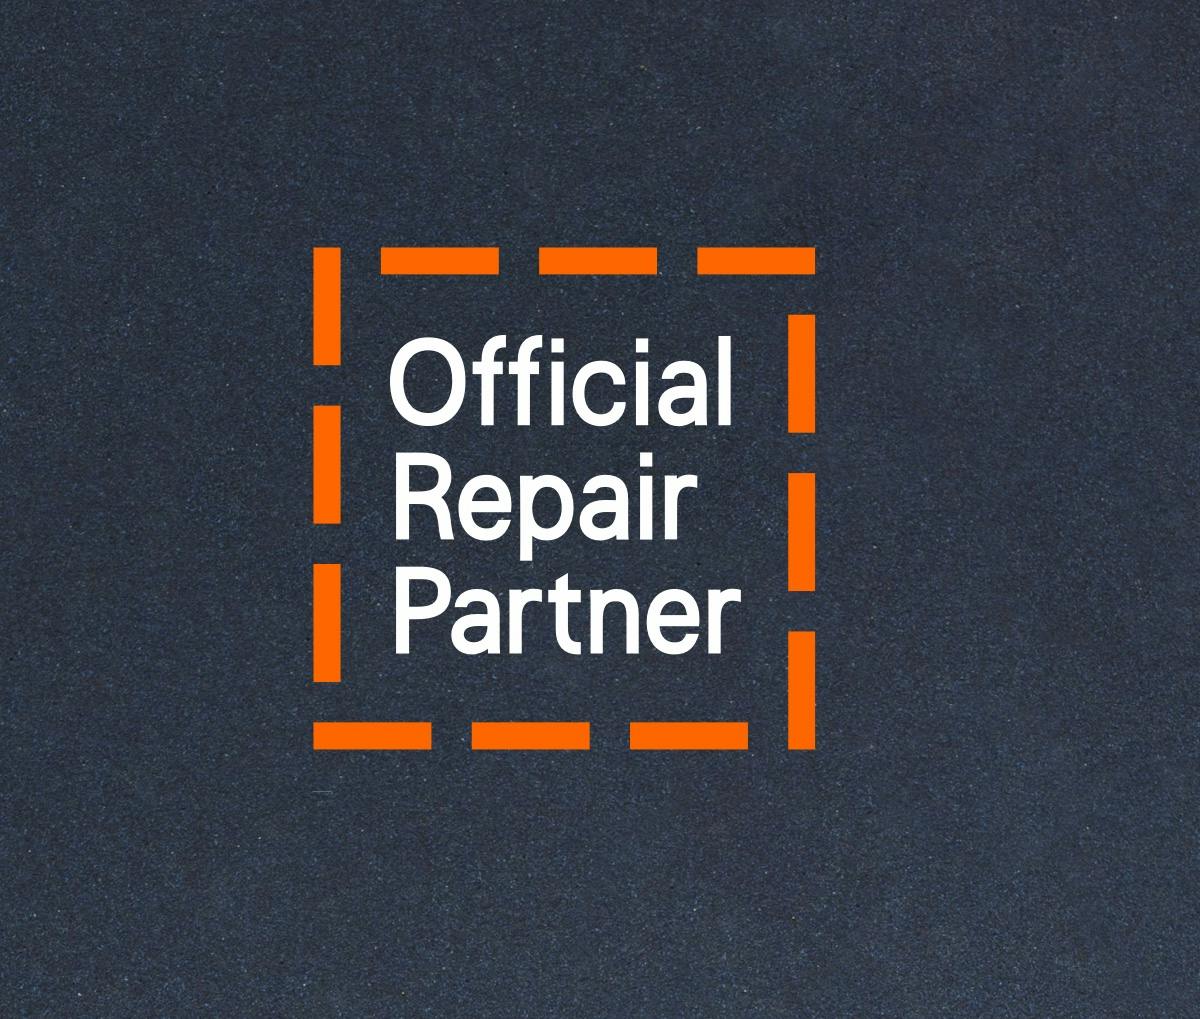 Mobile-repair-partner Copy